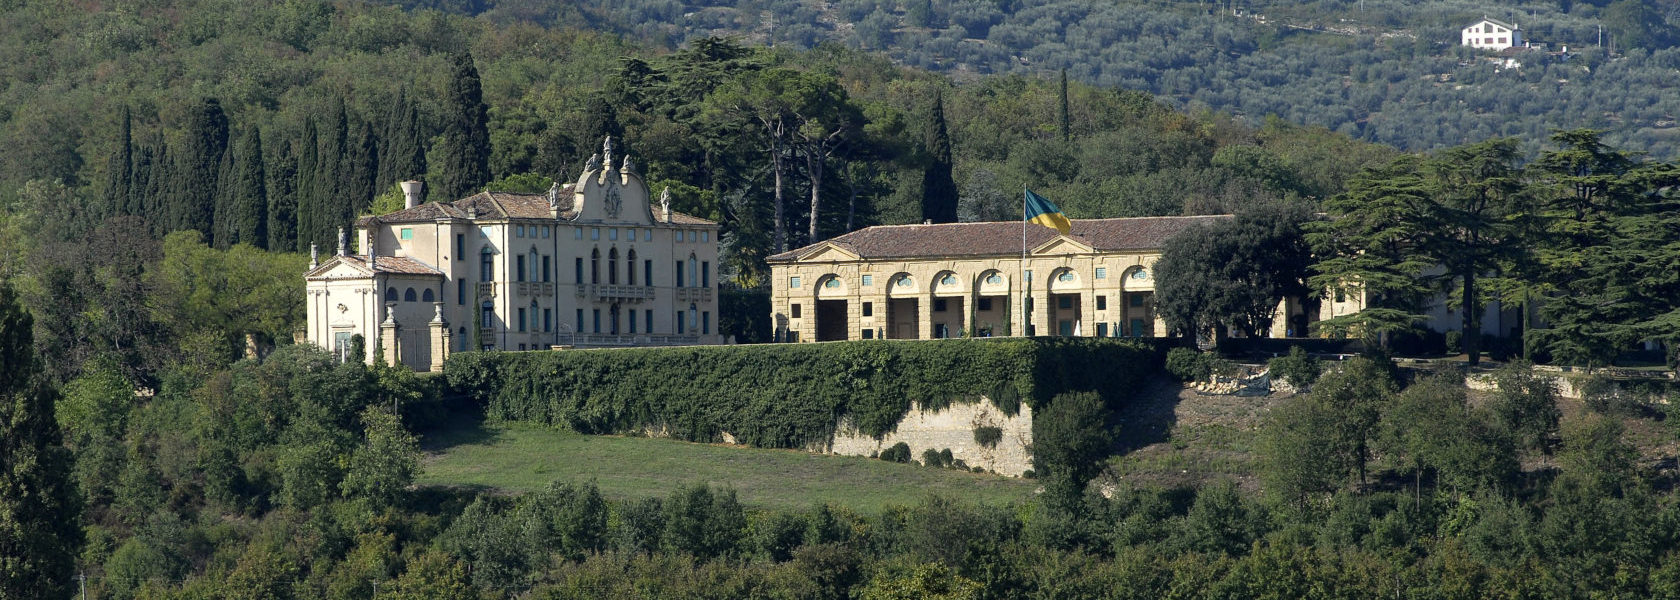 Vista paesaggistica della Villa di Montruglio nei colli Berici con la sua facciata, la Barchessa e la Cappella